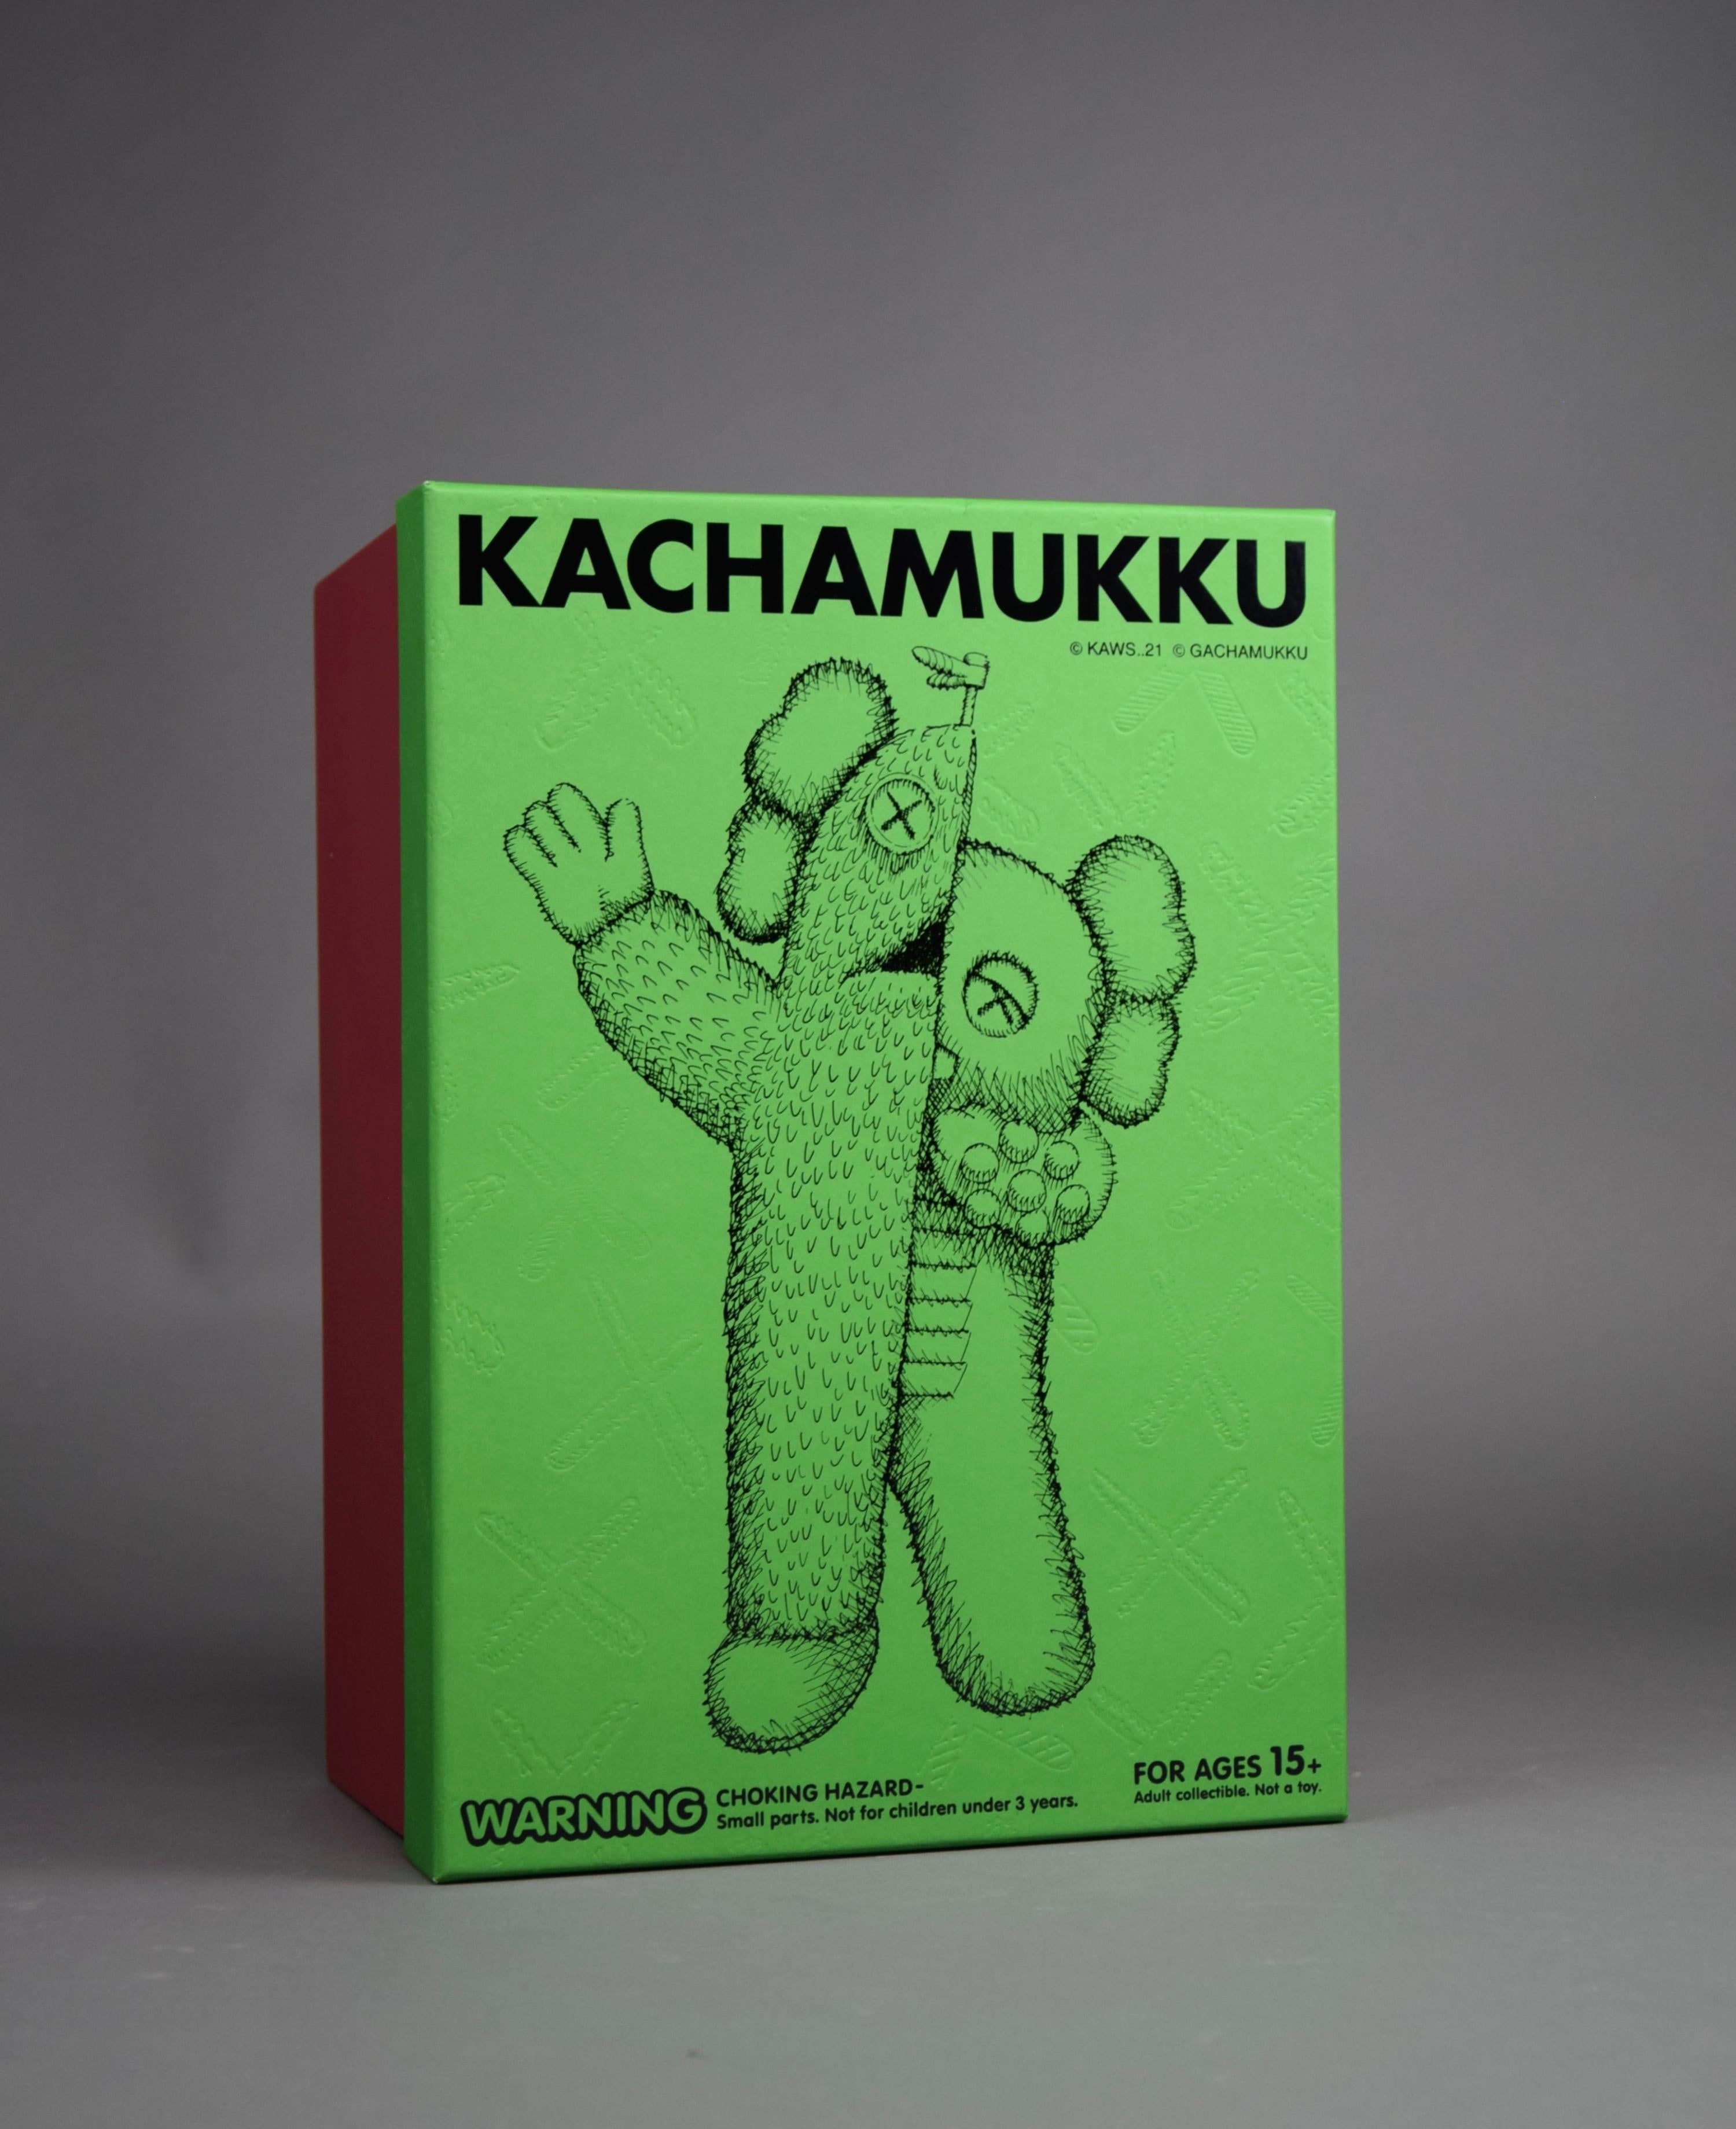 Kachamukku Designer Toy von KAWS - Wo Kunst auf Fantasie trifft!

Sind Sie bereit, Ihre Sammlung auf eine ganz neue Ebene künstlerischer Brillanz zu heben? Das Kachamukku Designerspielzeug von KAWS wird Ihre Sinne fesseln und Sie auf eine Reise